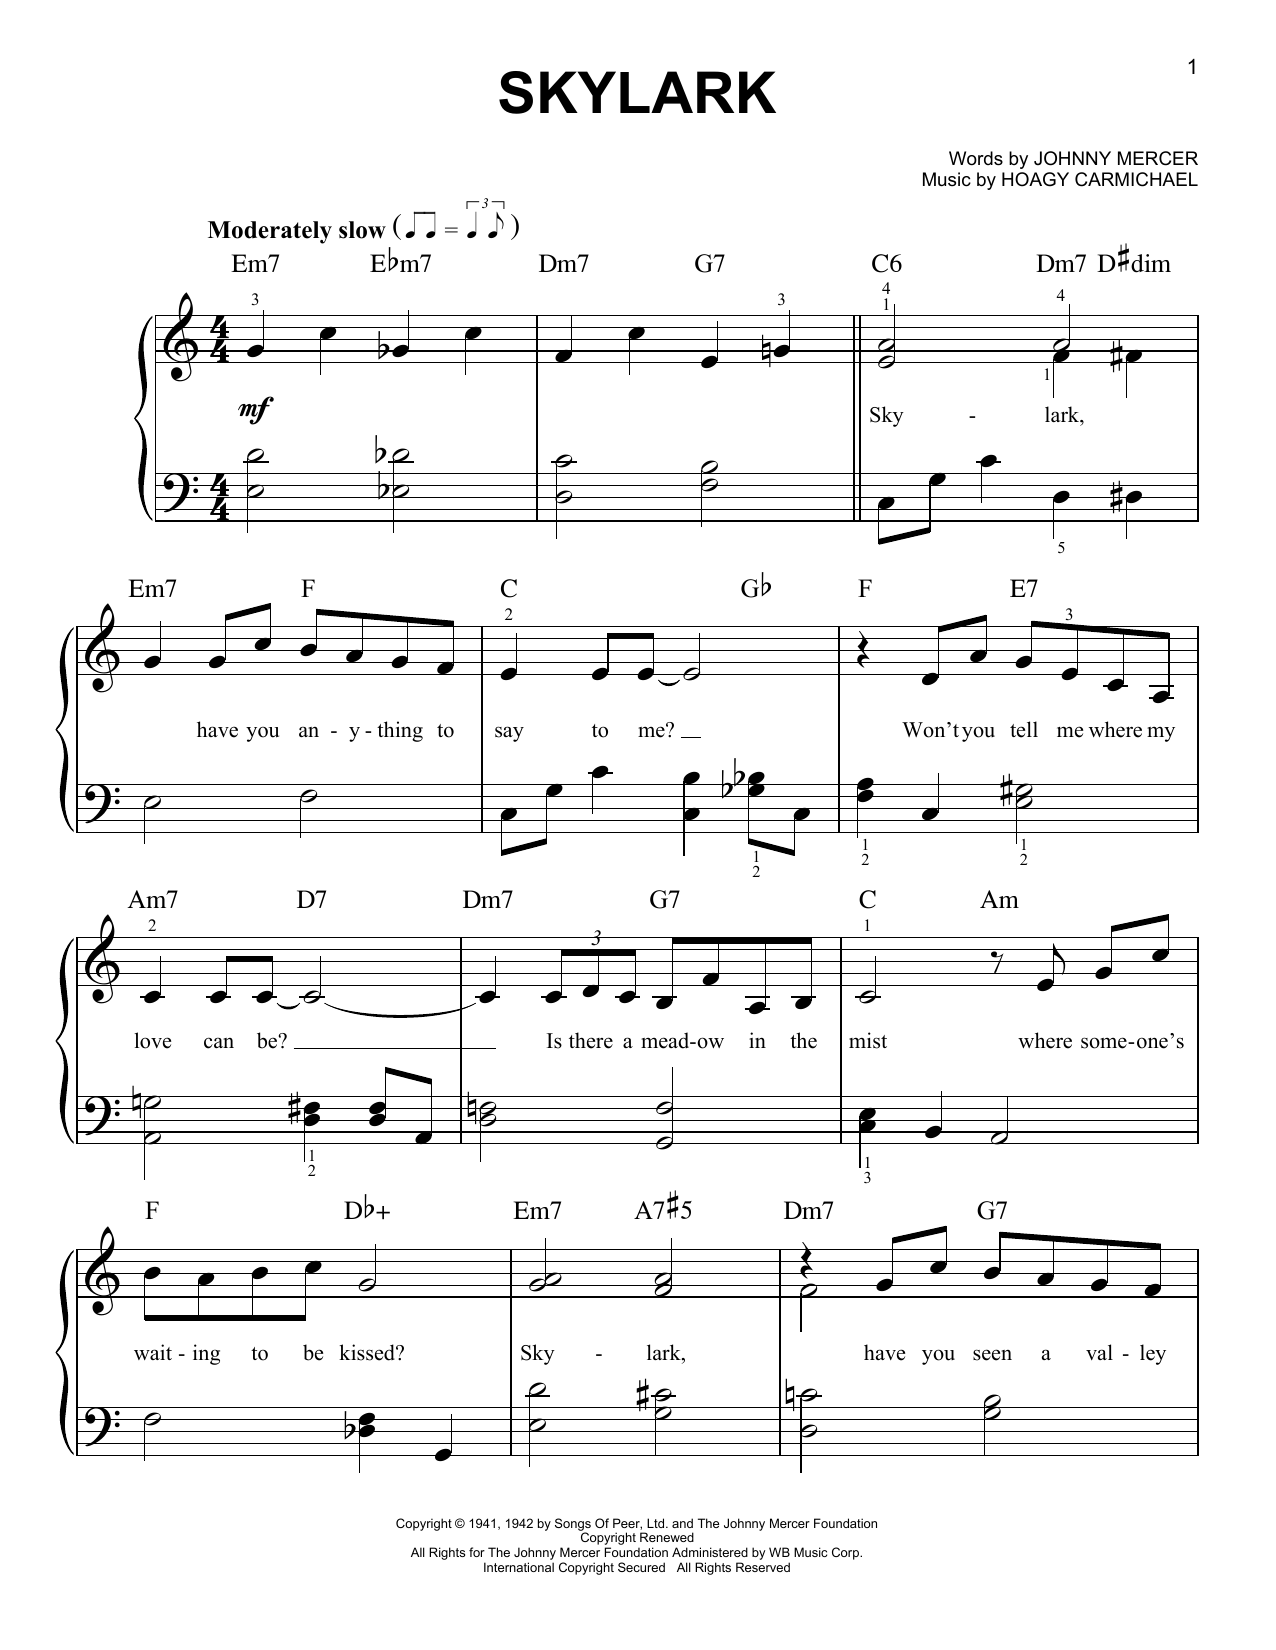 Hoagy Carmichael Skylark Sheet Music Notes & Chords for Trombone - Download or Print PDF